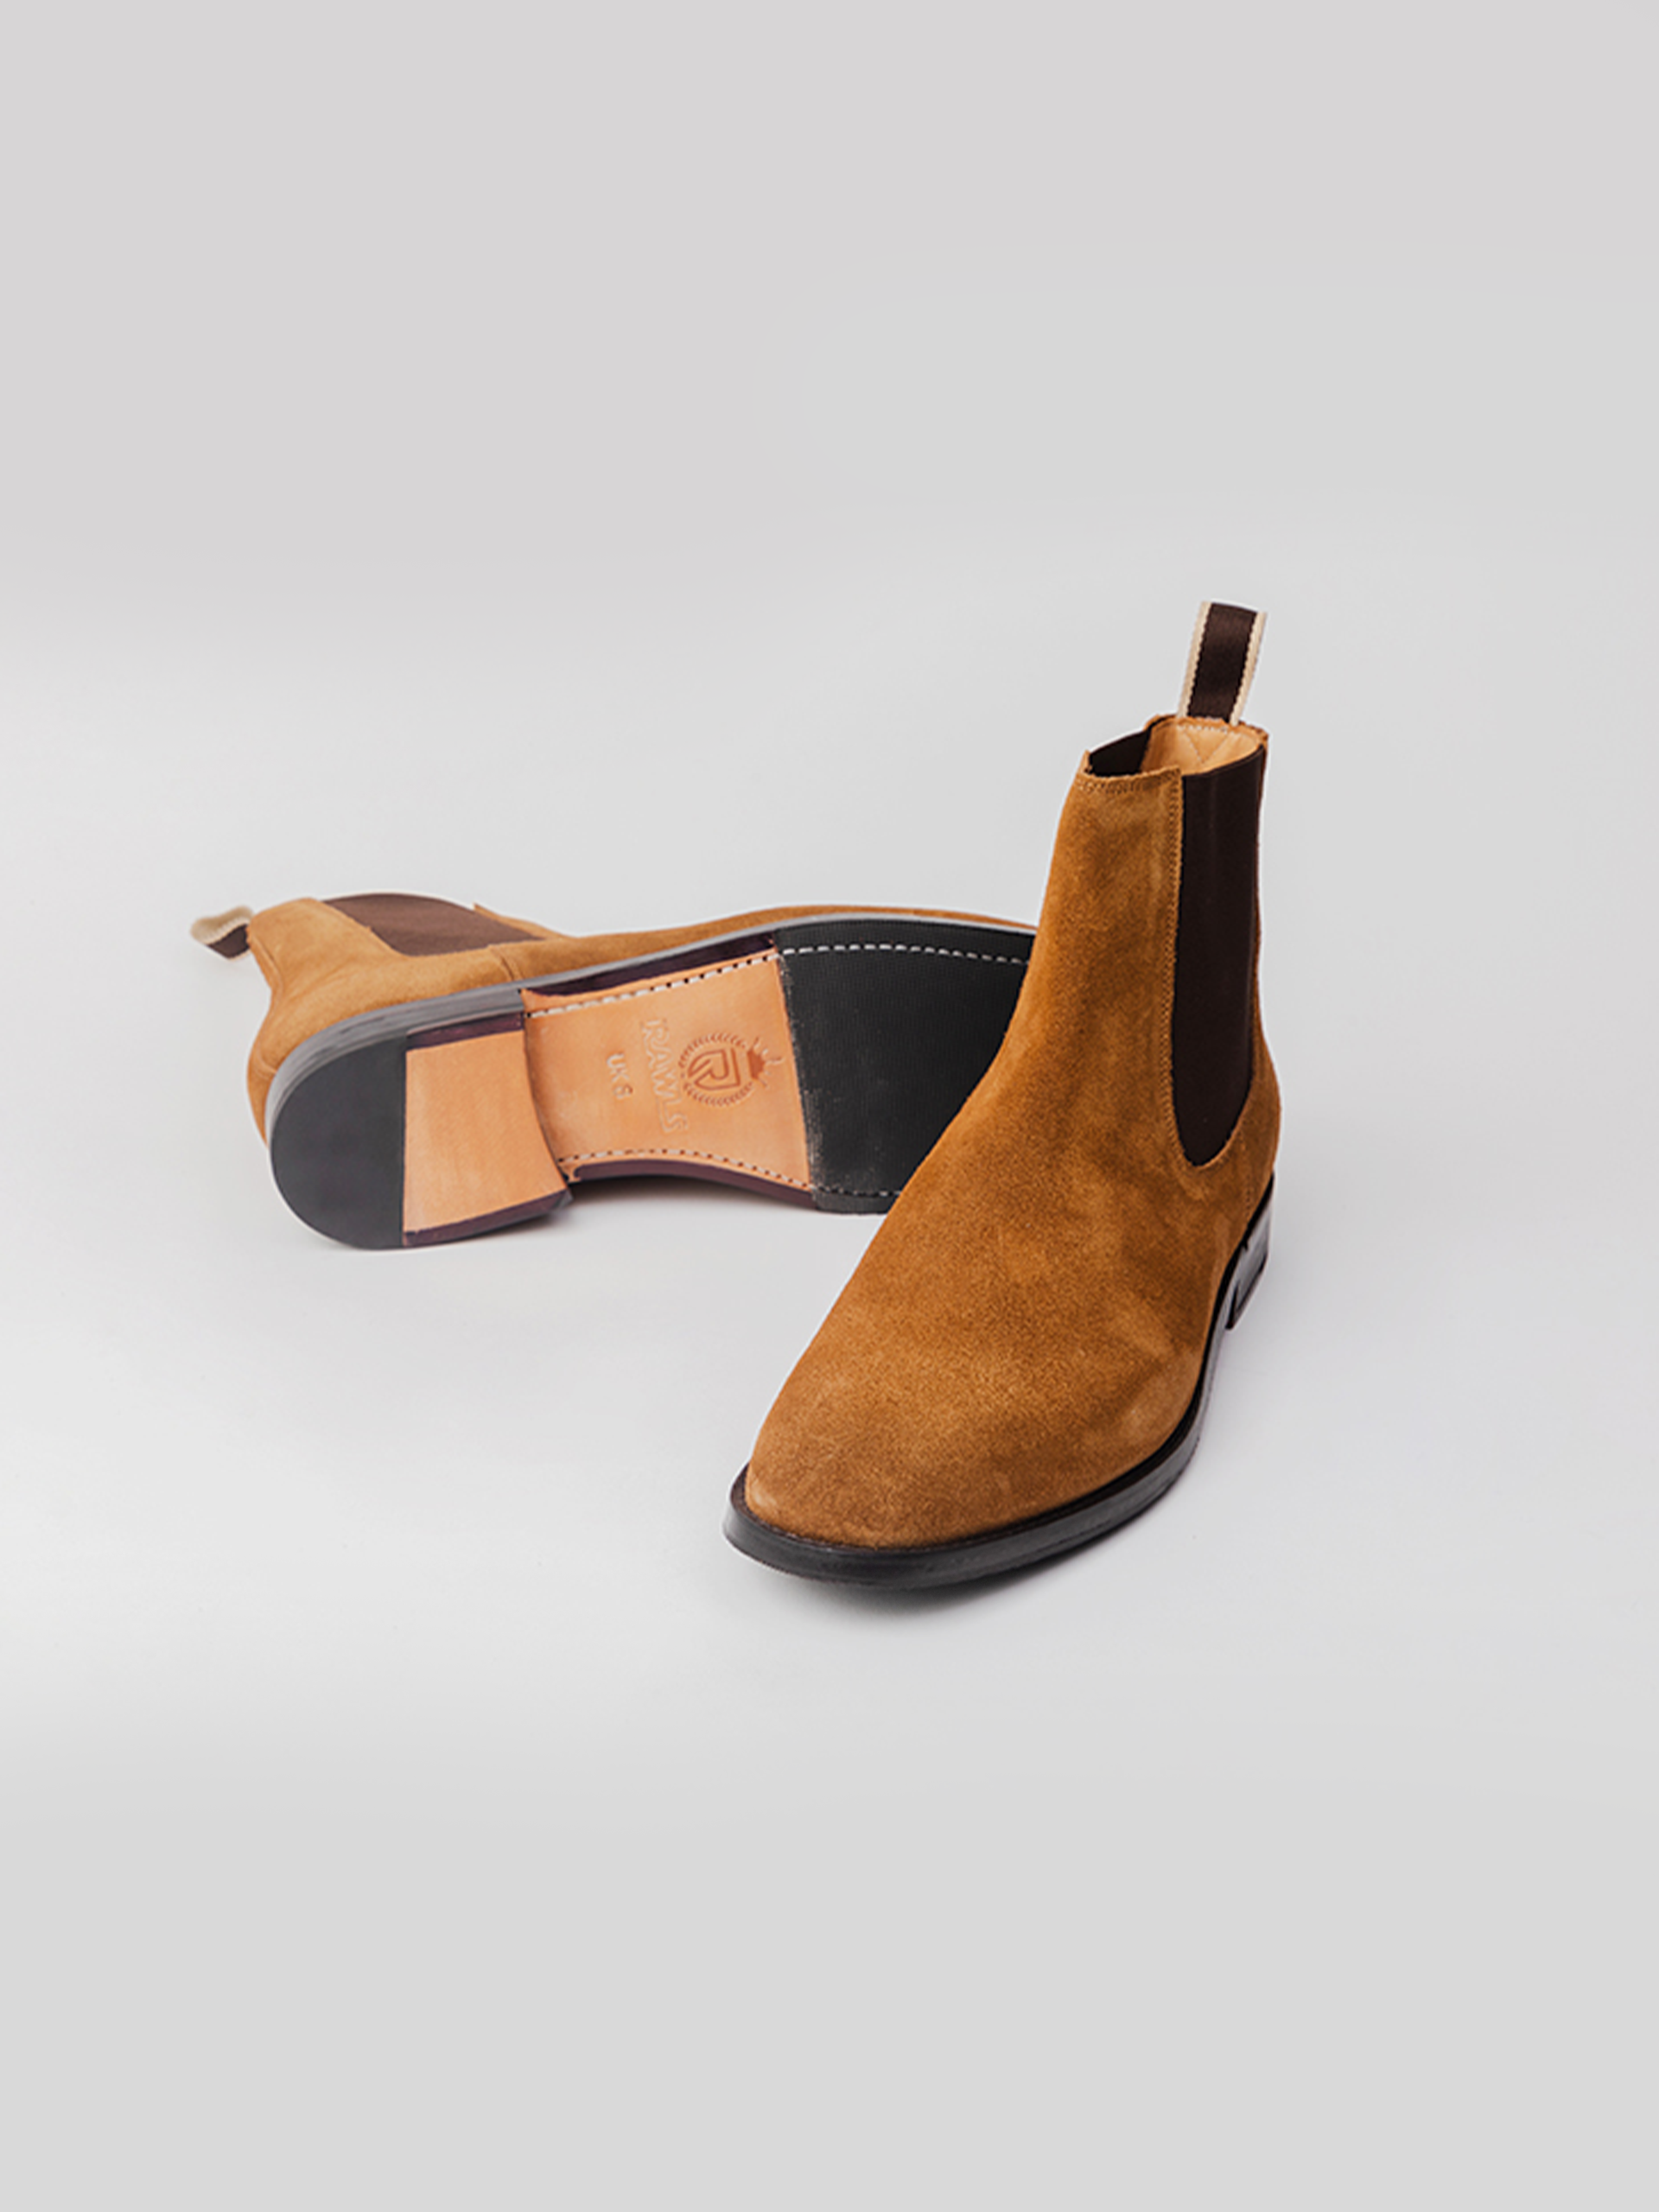 Ødelæggelse umoral ønskelig Buy Designer Shoes Online | Suede Leather Boots | Rawls Luxure